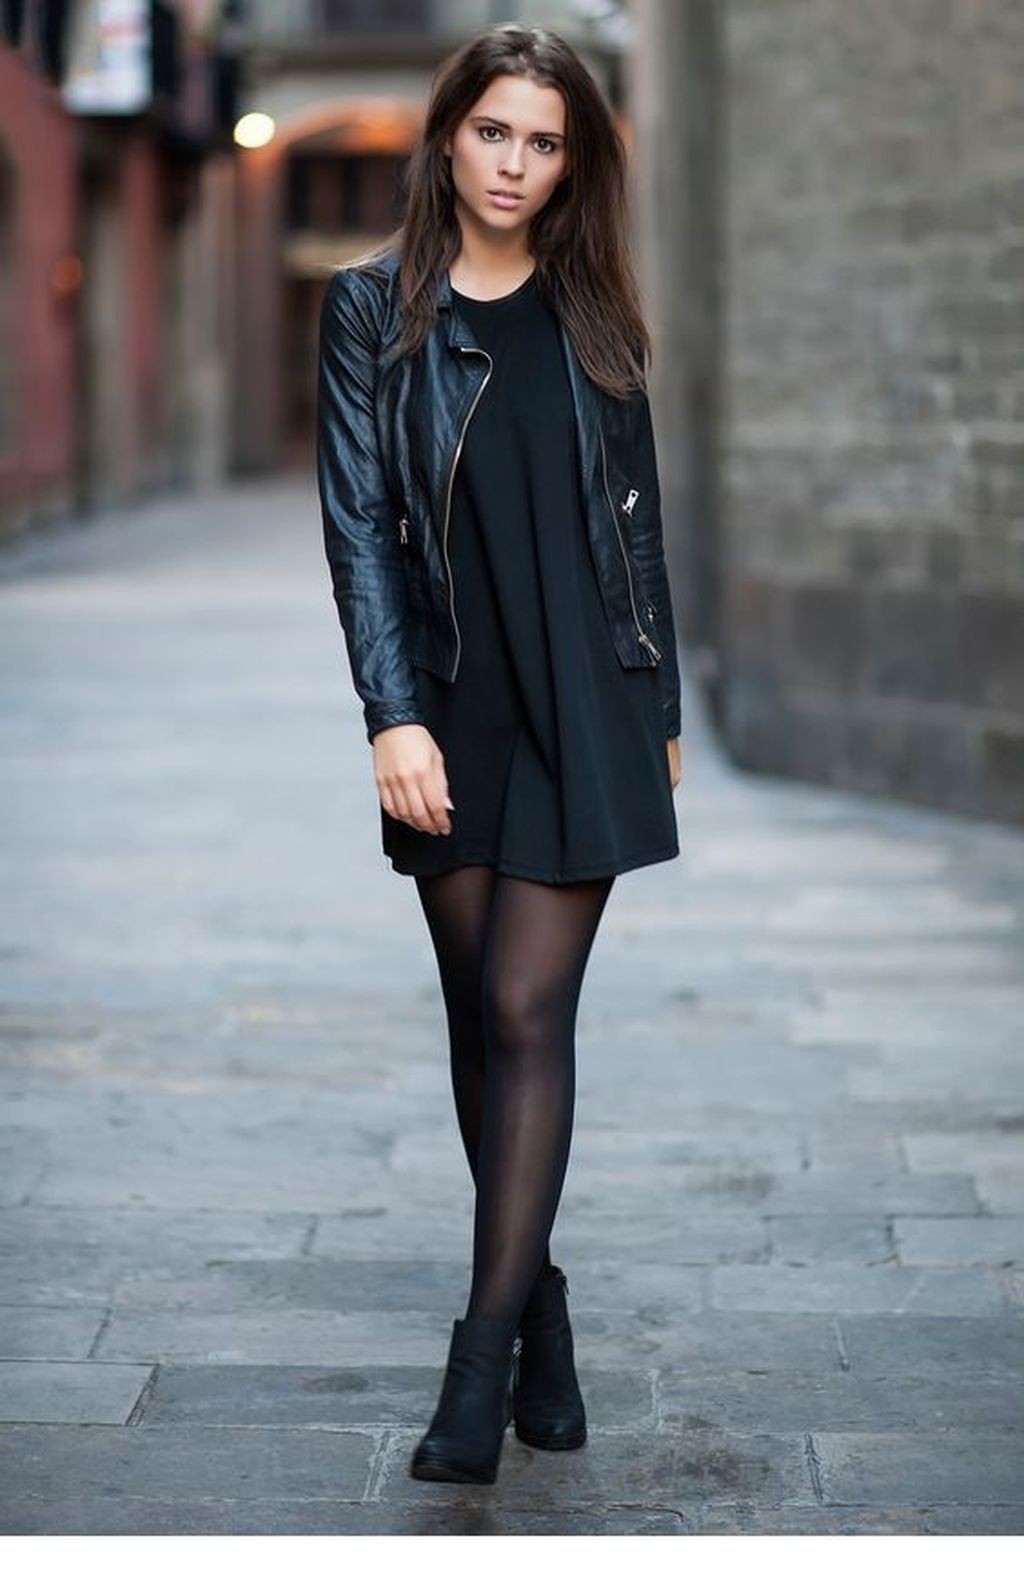 Zapatos De Tacones Para Usar Con Un Vestido Negro: Trajes De Vestido Negro  